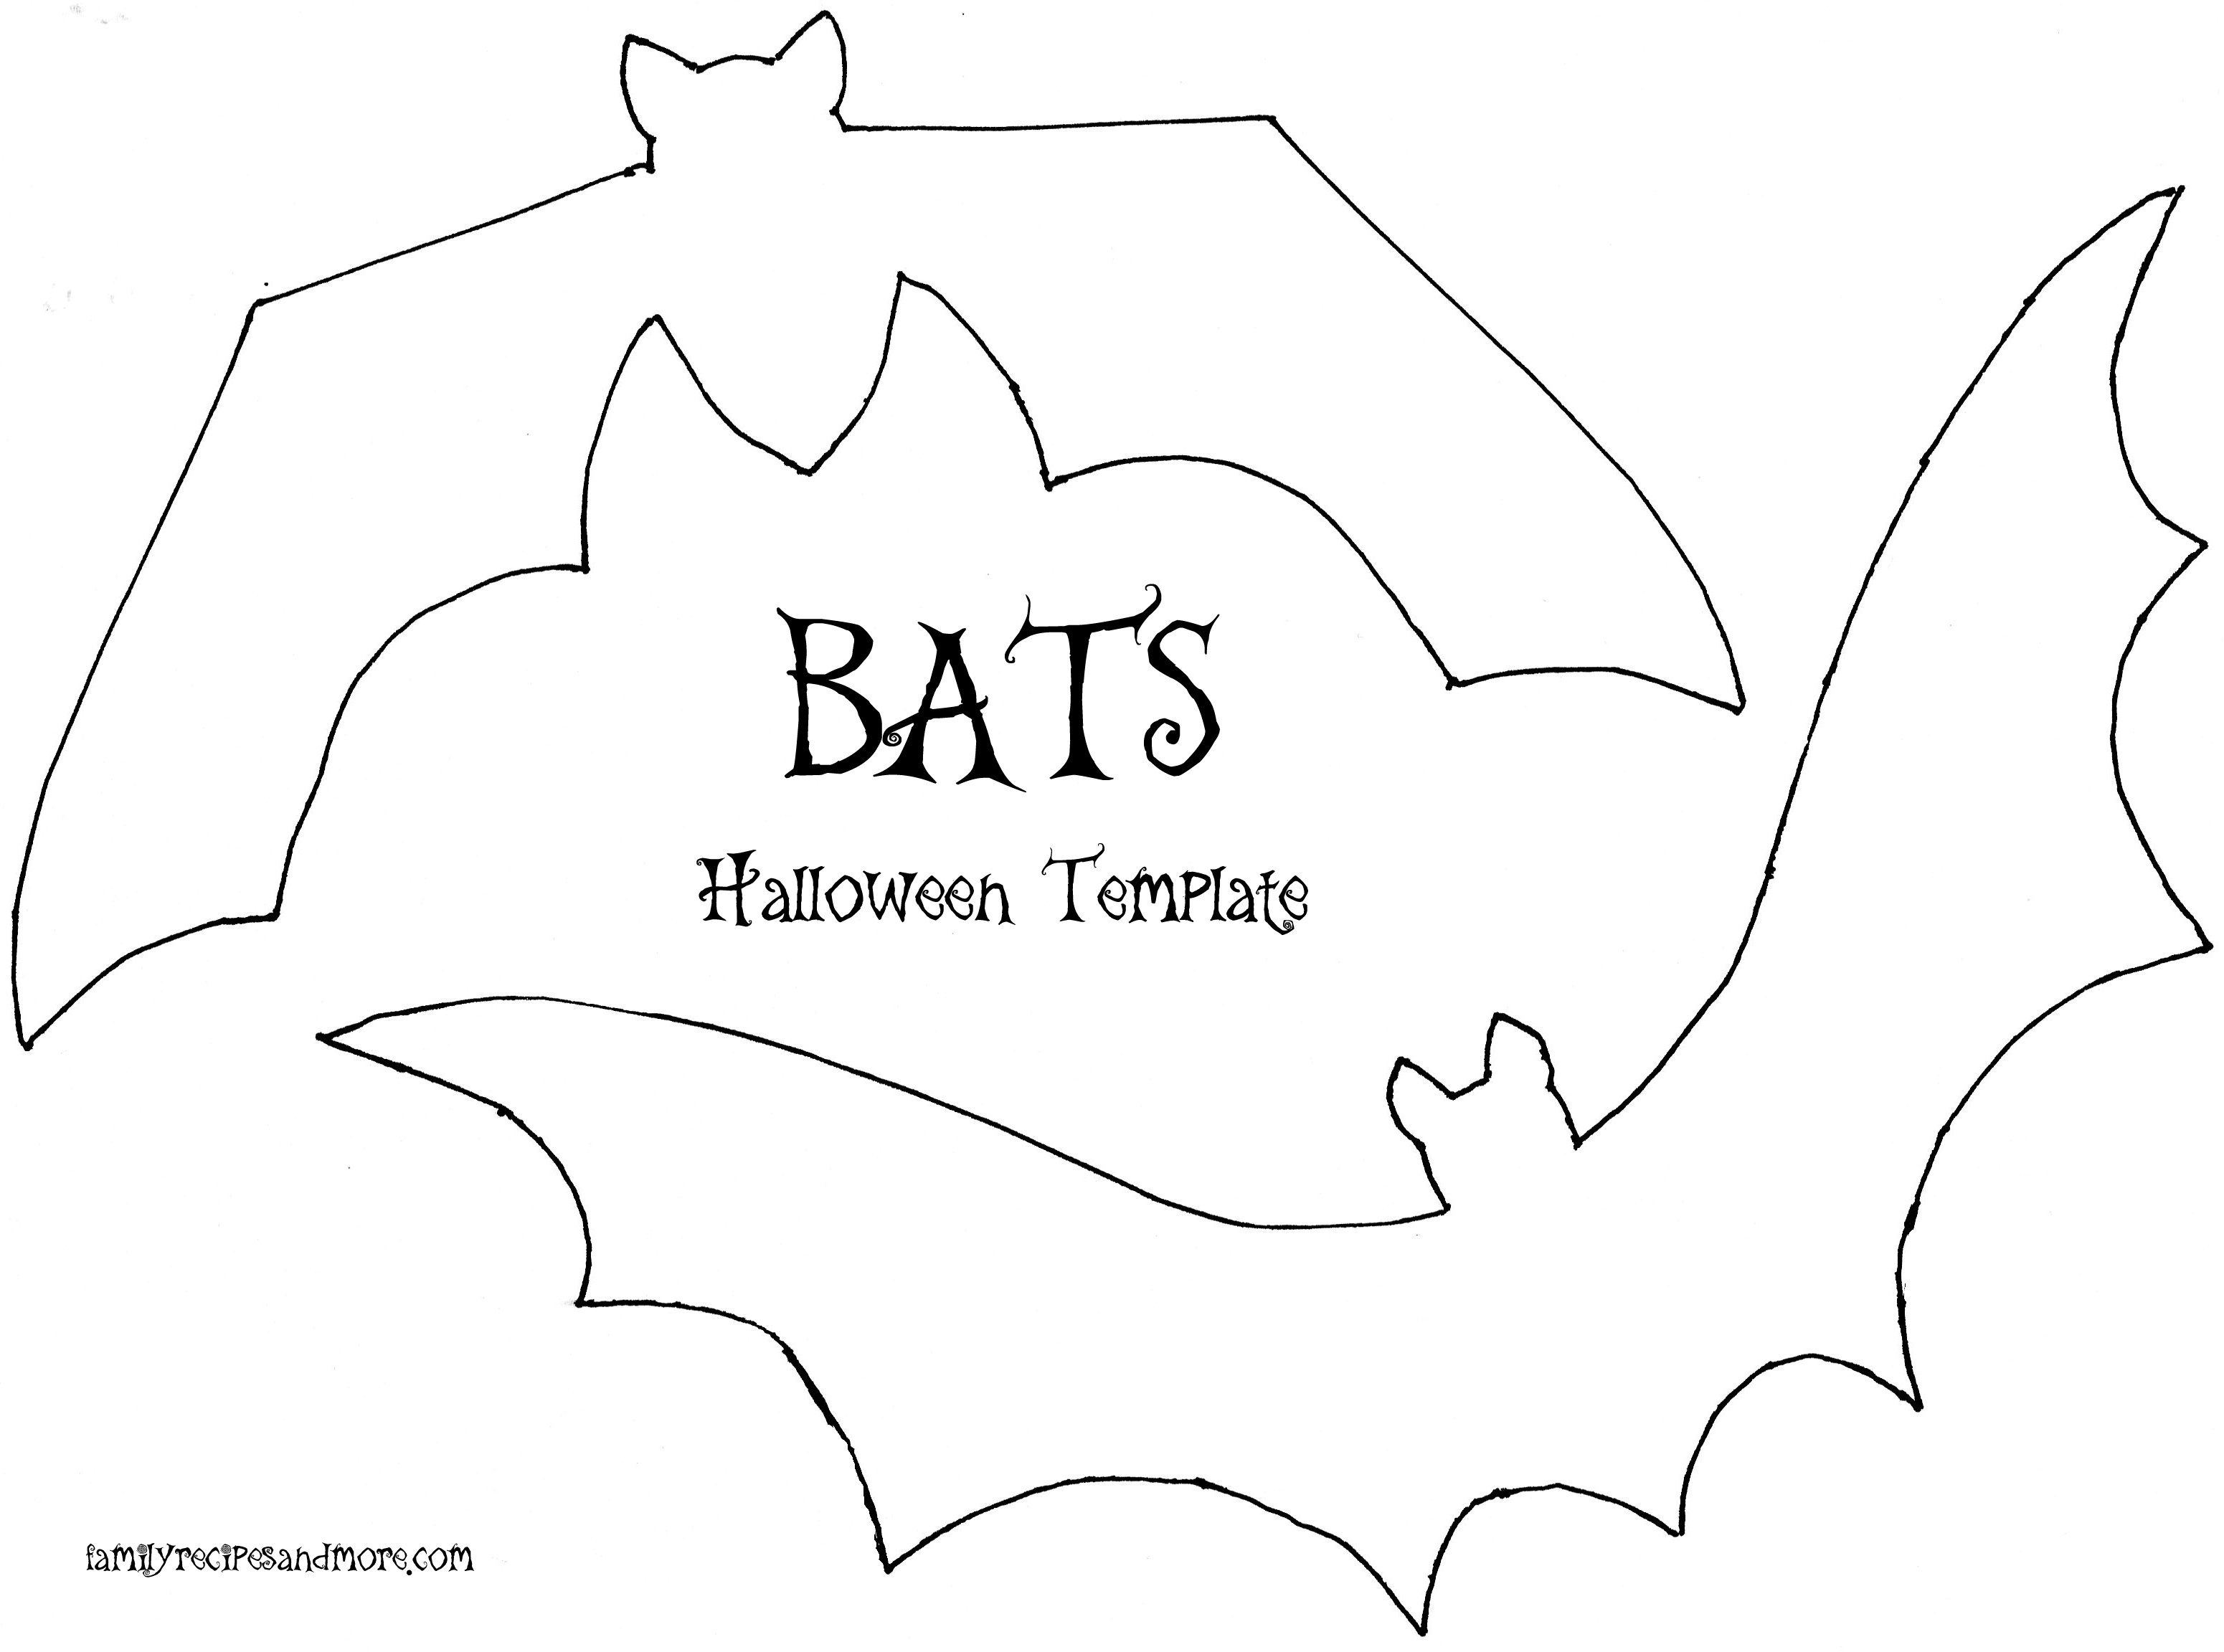 halloween bat template - Clip Art Library